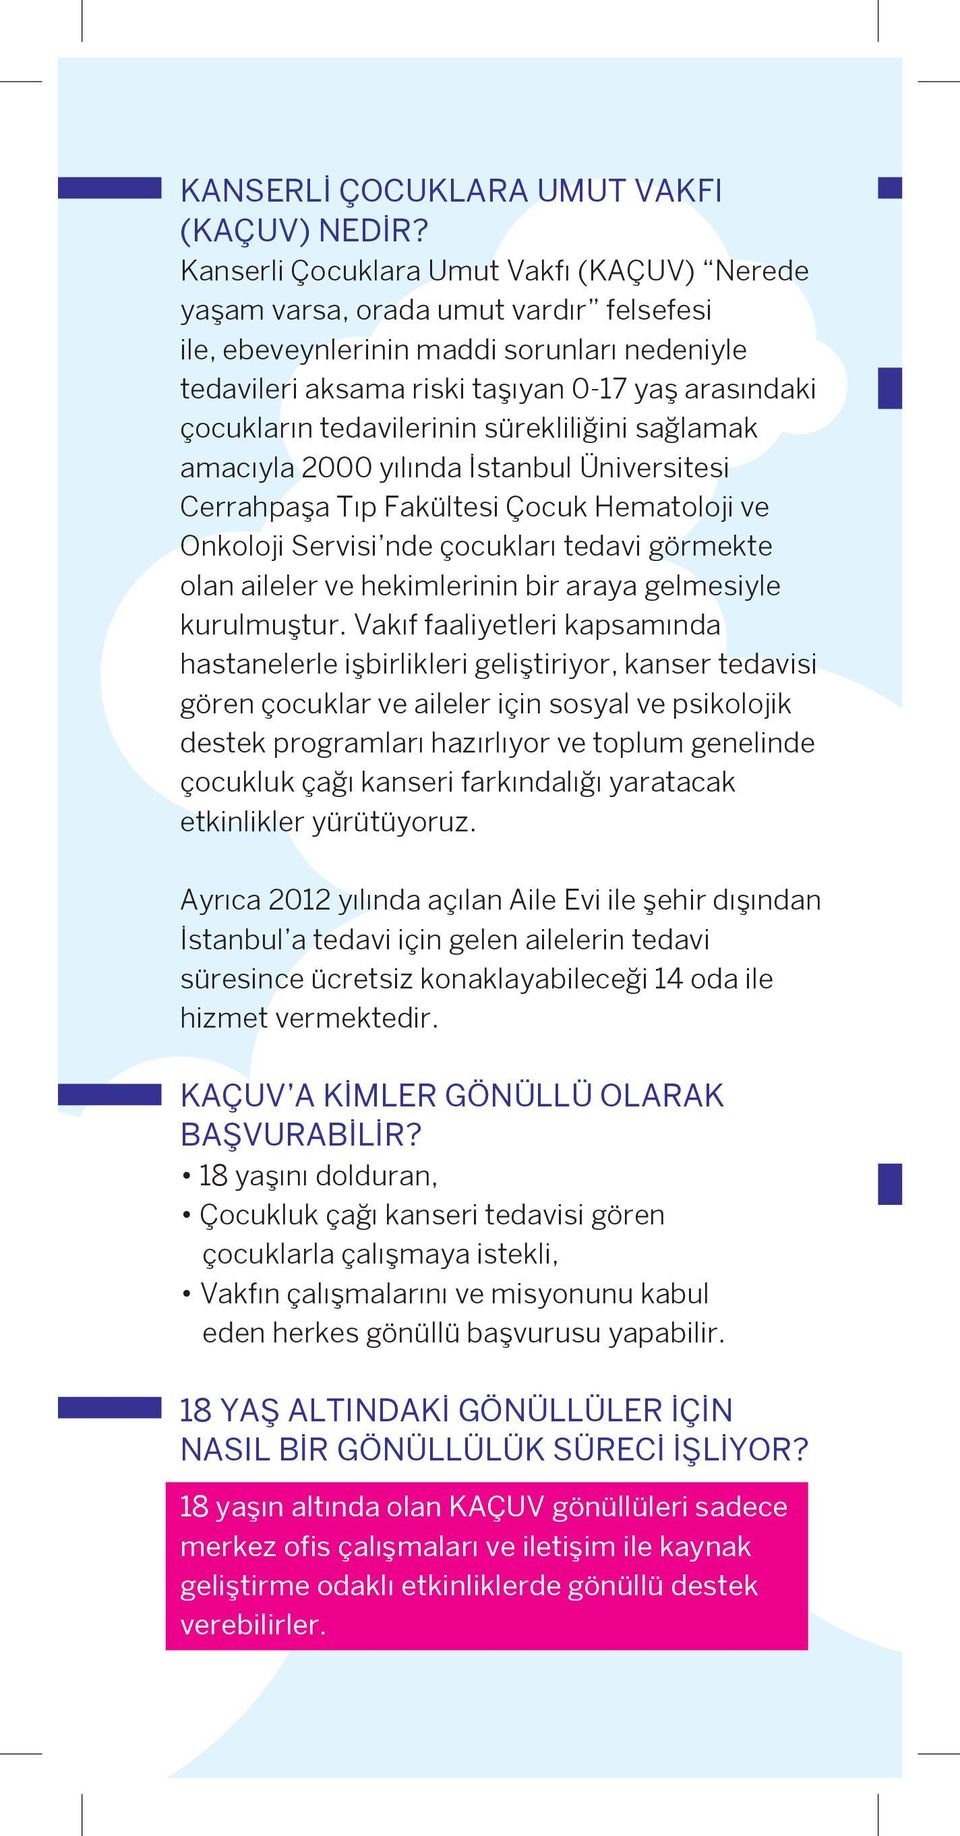 tedavilerinin sürekliliğini sağlamak amacıyla 2000 yılında İstanbul Üniversitesi Cerrahpaşa Tıp Fakültesi Çocuk Hematoloji ve Onkoloji Servisi nde çocukları tedavi görmekte olan aileler ve